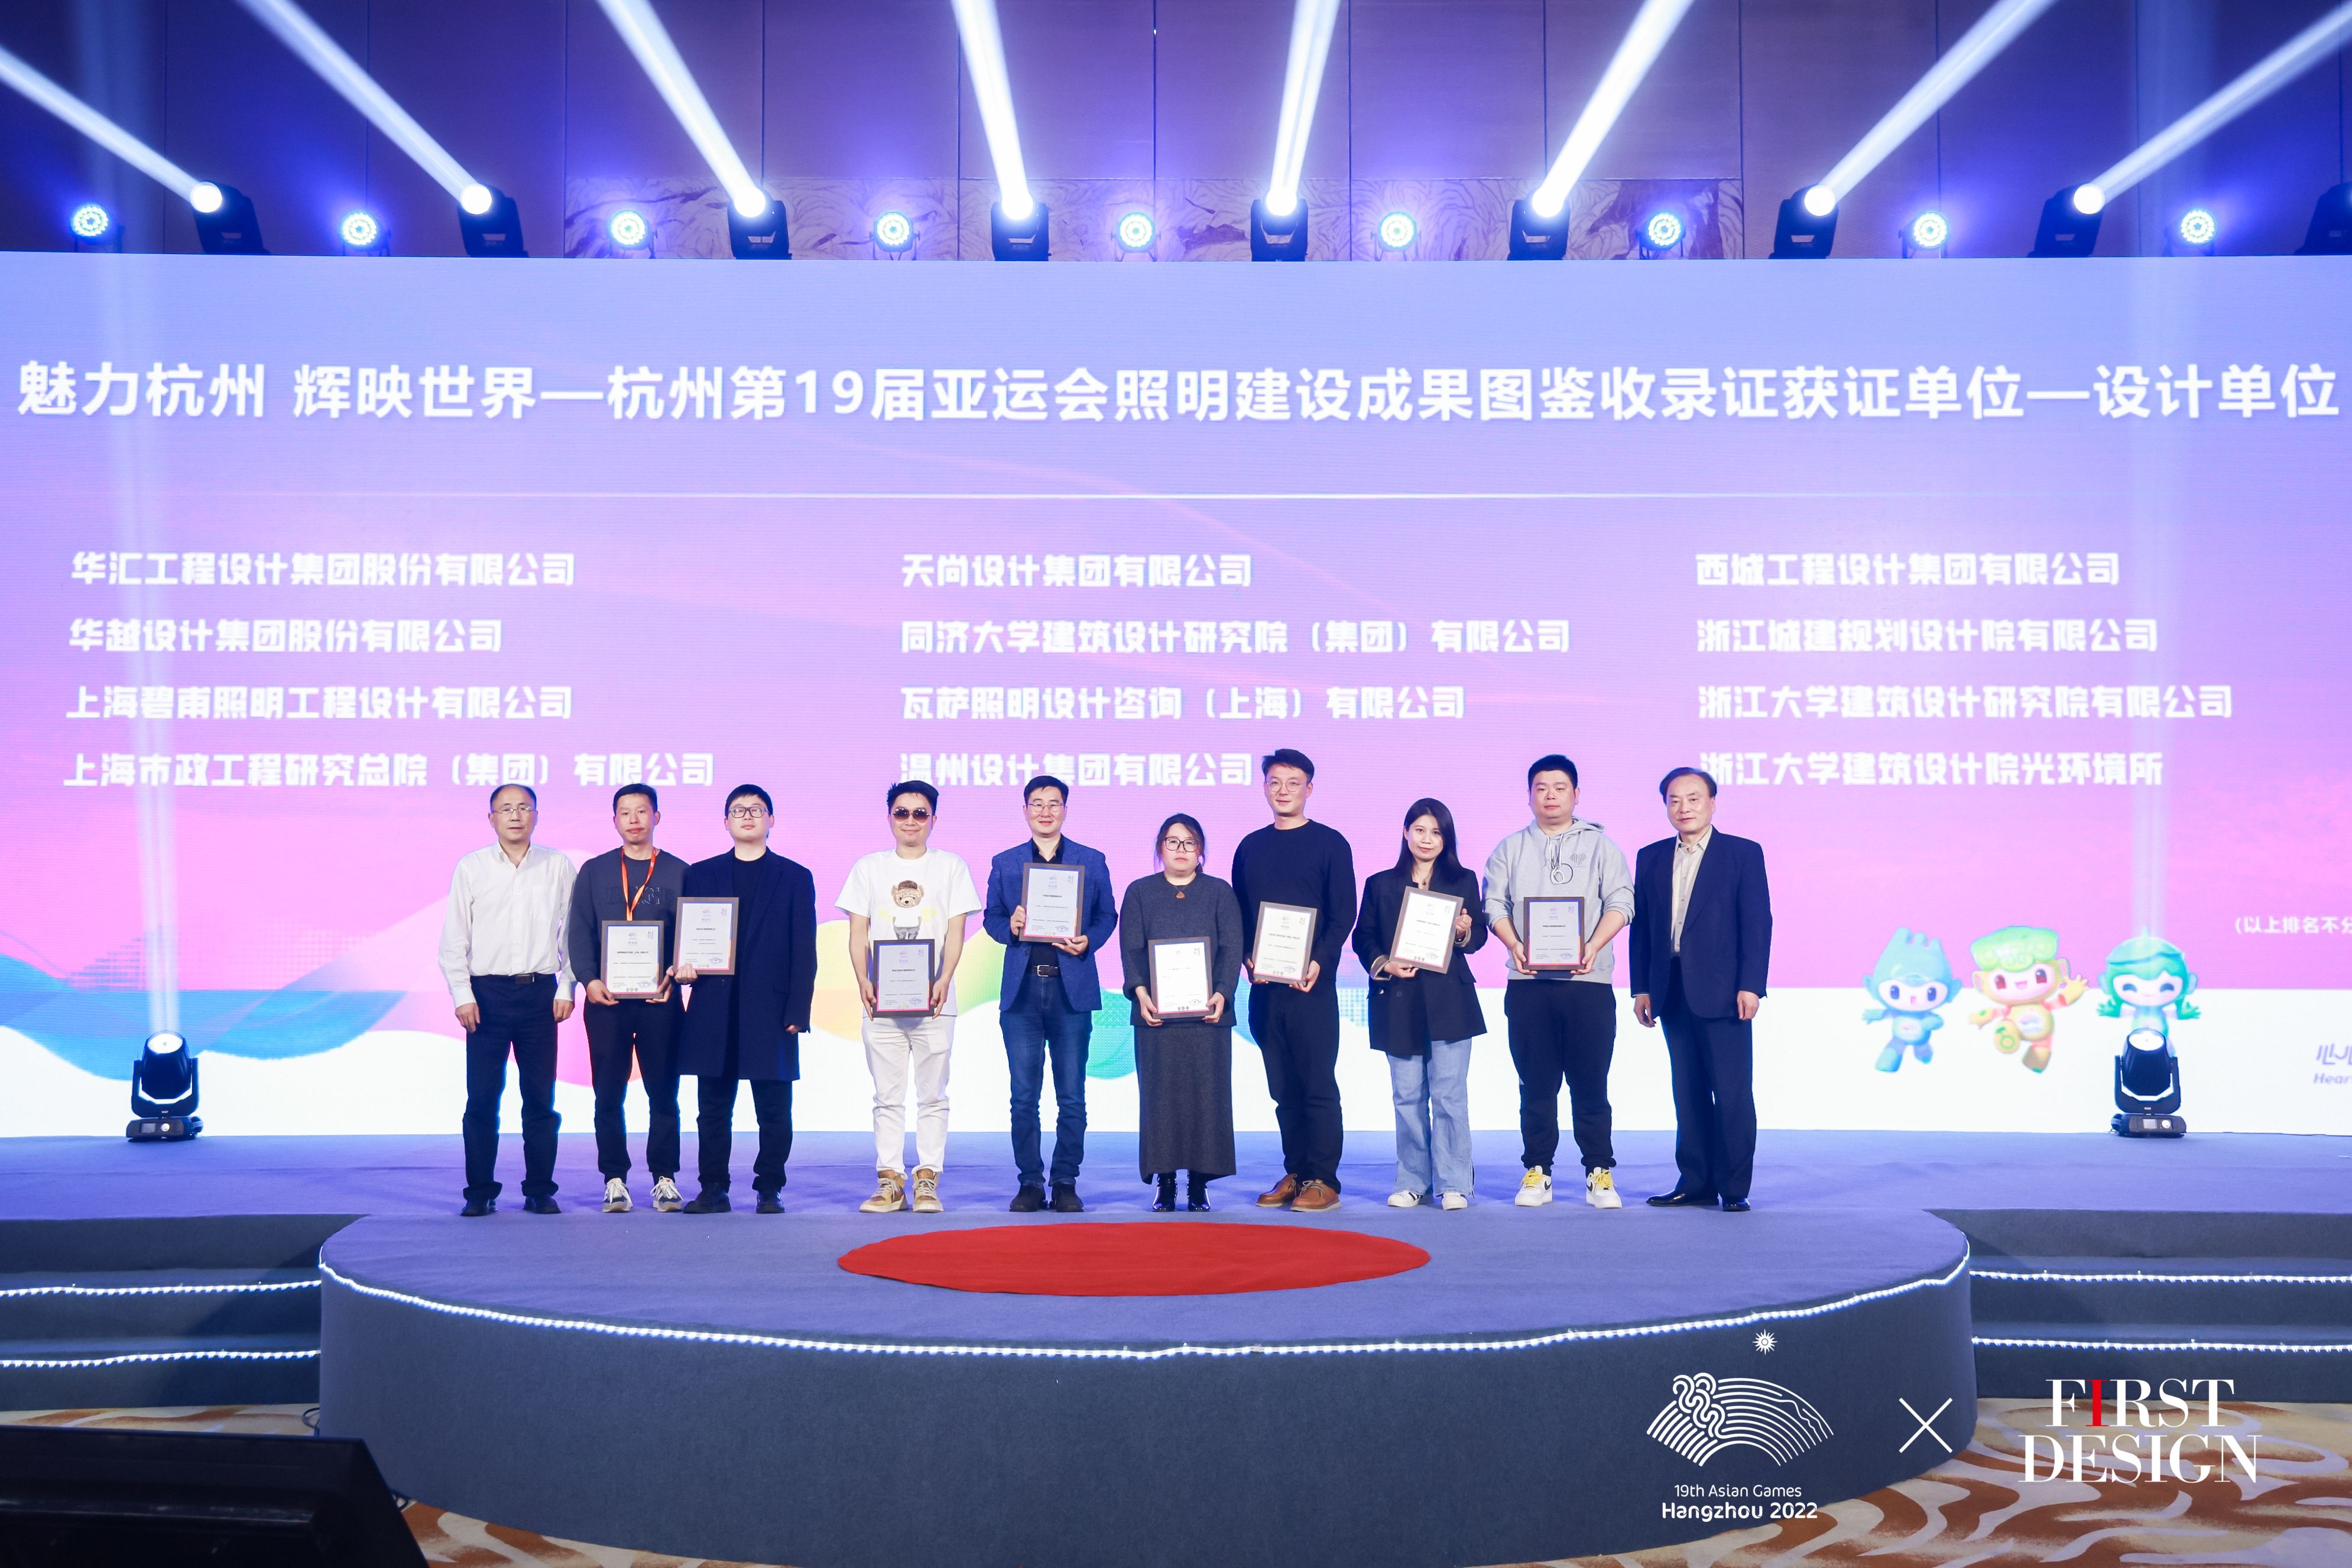 我院9个项目被收录至《魅力杭州 辉映世界--杭州第19届亚运会照明建设成果图鉴》